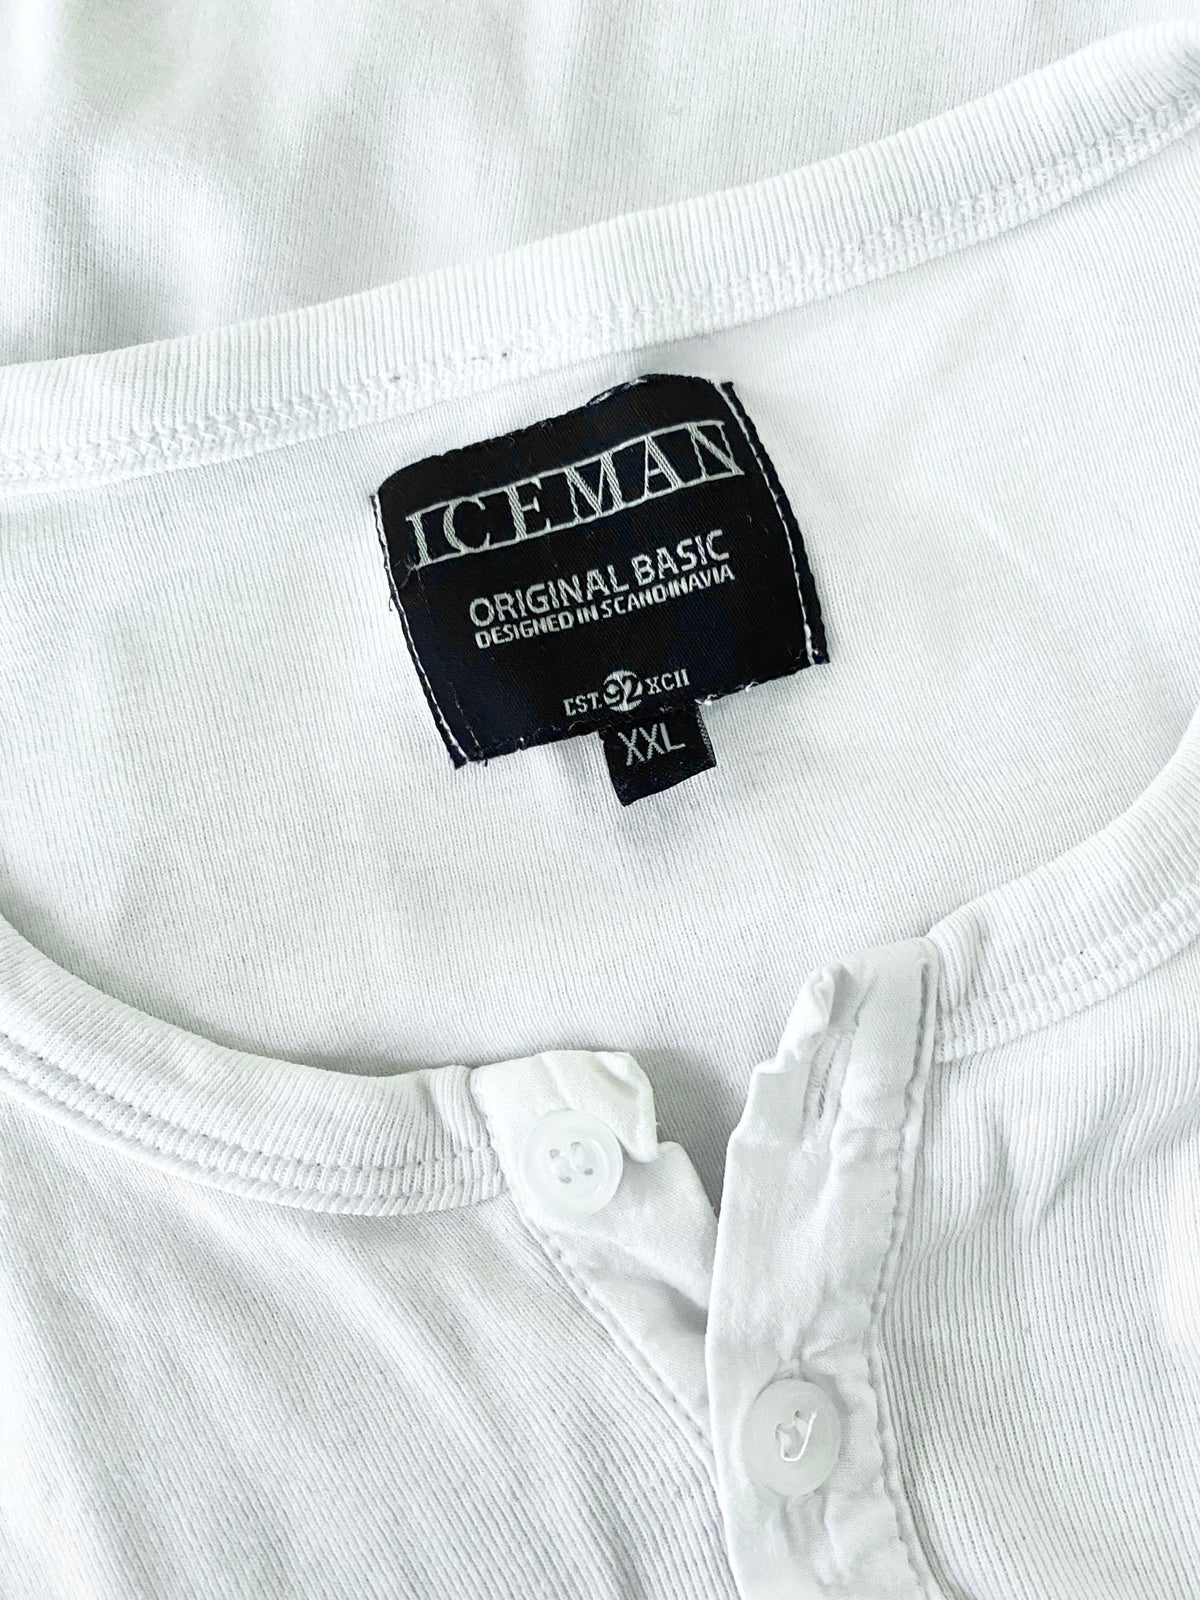 T-shirt, Iceman, str. XXL - dba.dk - Køb og Salg af Nyt og